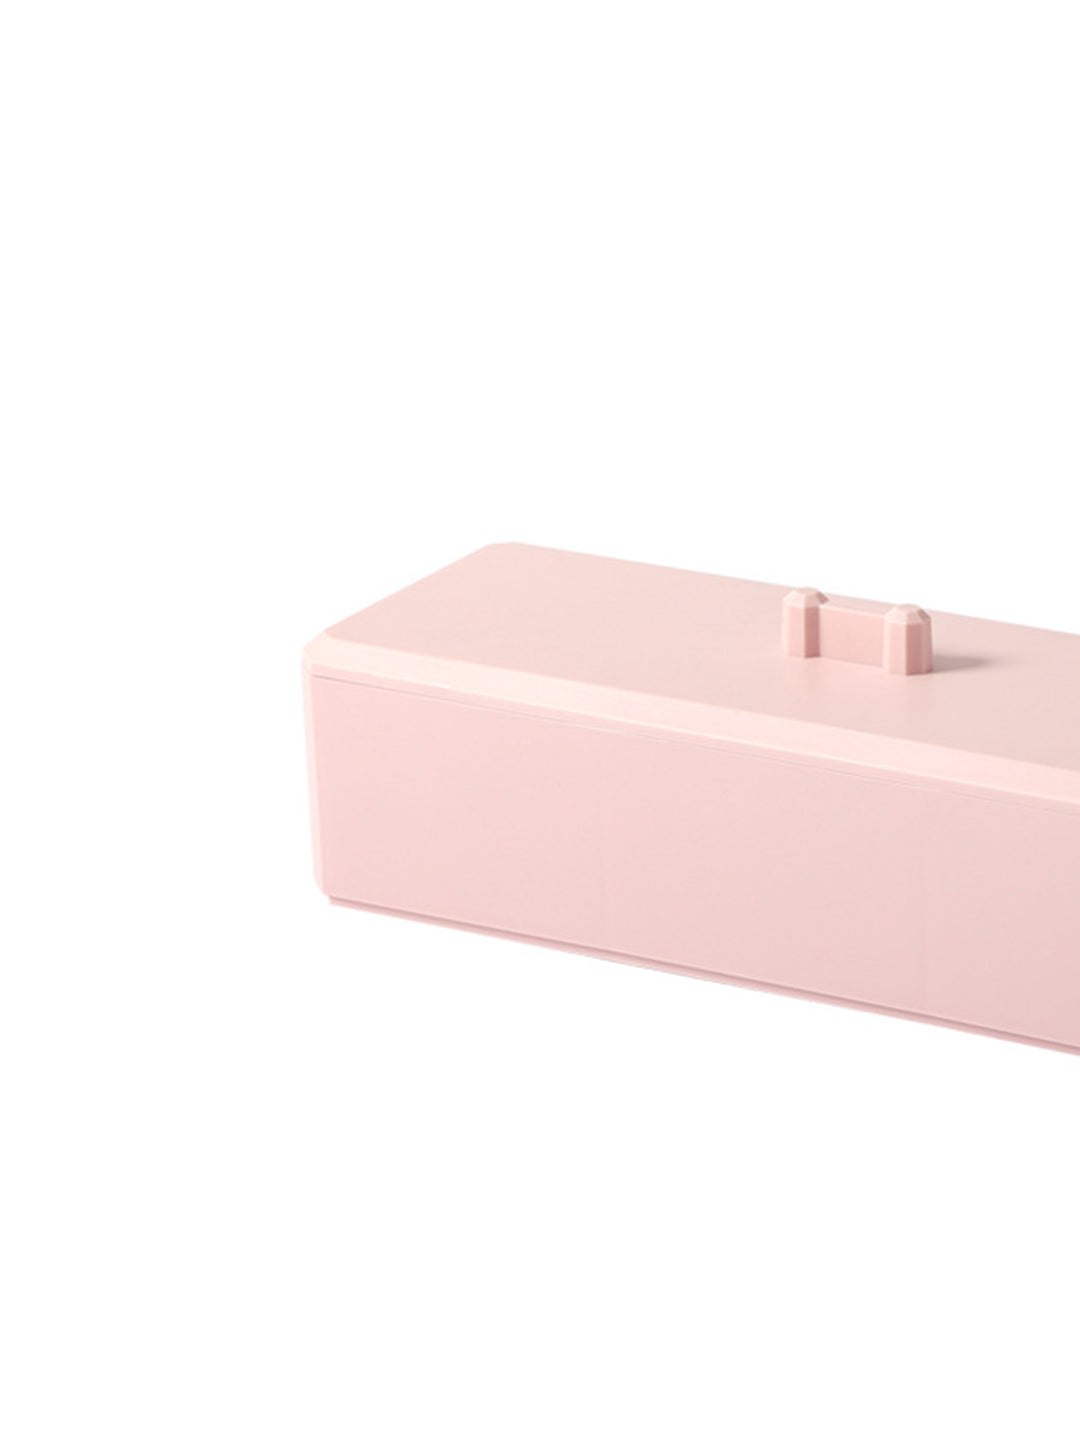 VON CASA Pink Makeup Organizer Container With Lid - 26X8.5X7cm